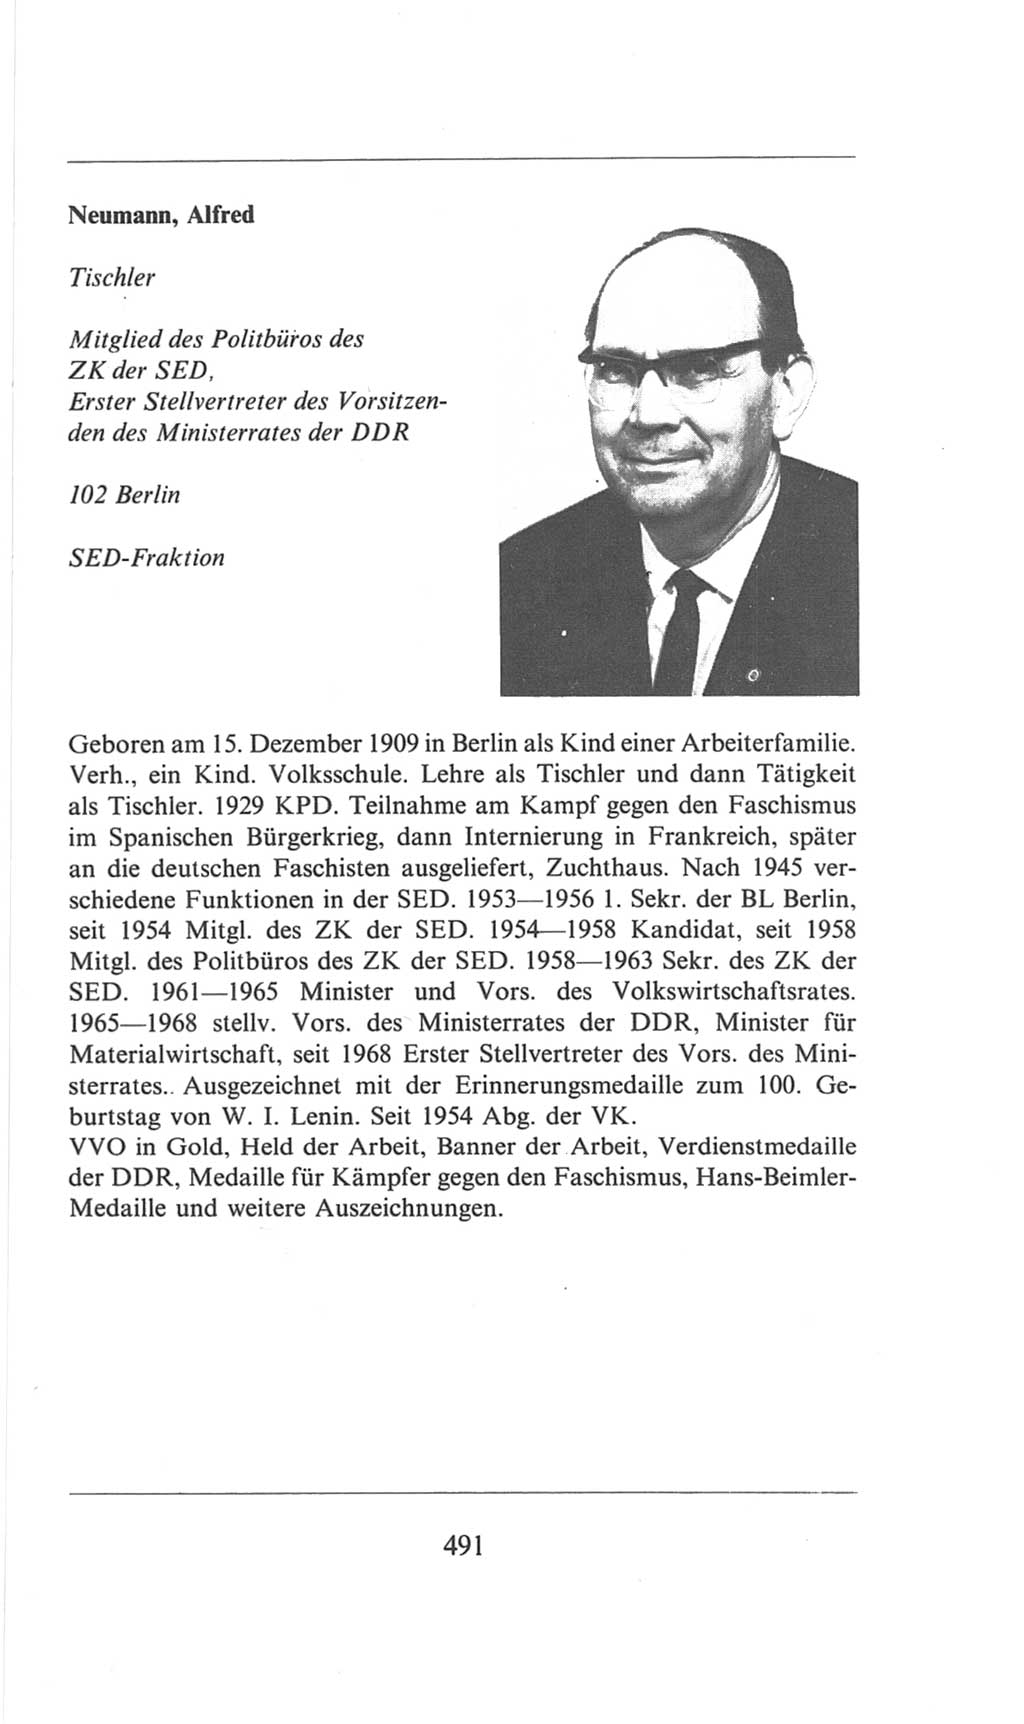 Volkskammer (VK) der Deutschen Demokratischen Republik (DDR), 6. Wahlperiode 1971-1976, Seite 491 (VK. DDR 6. WP. 1971-1976, S. 491)